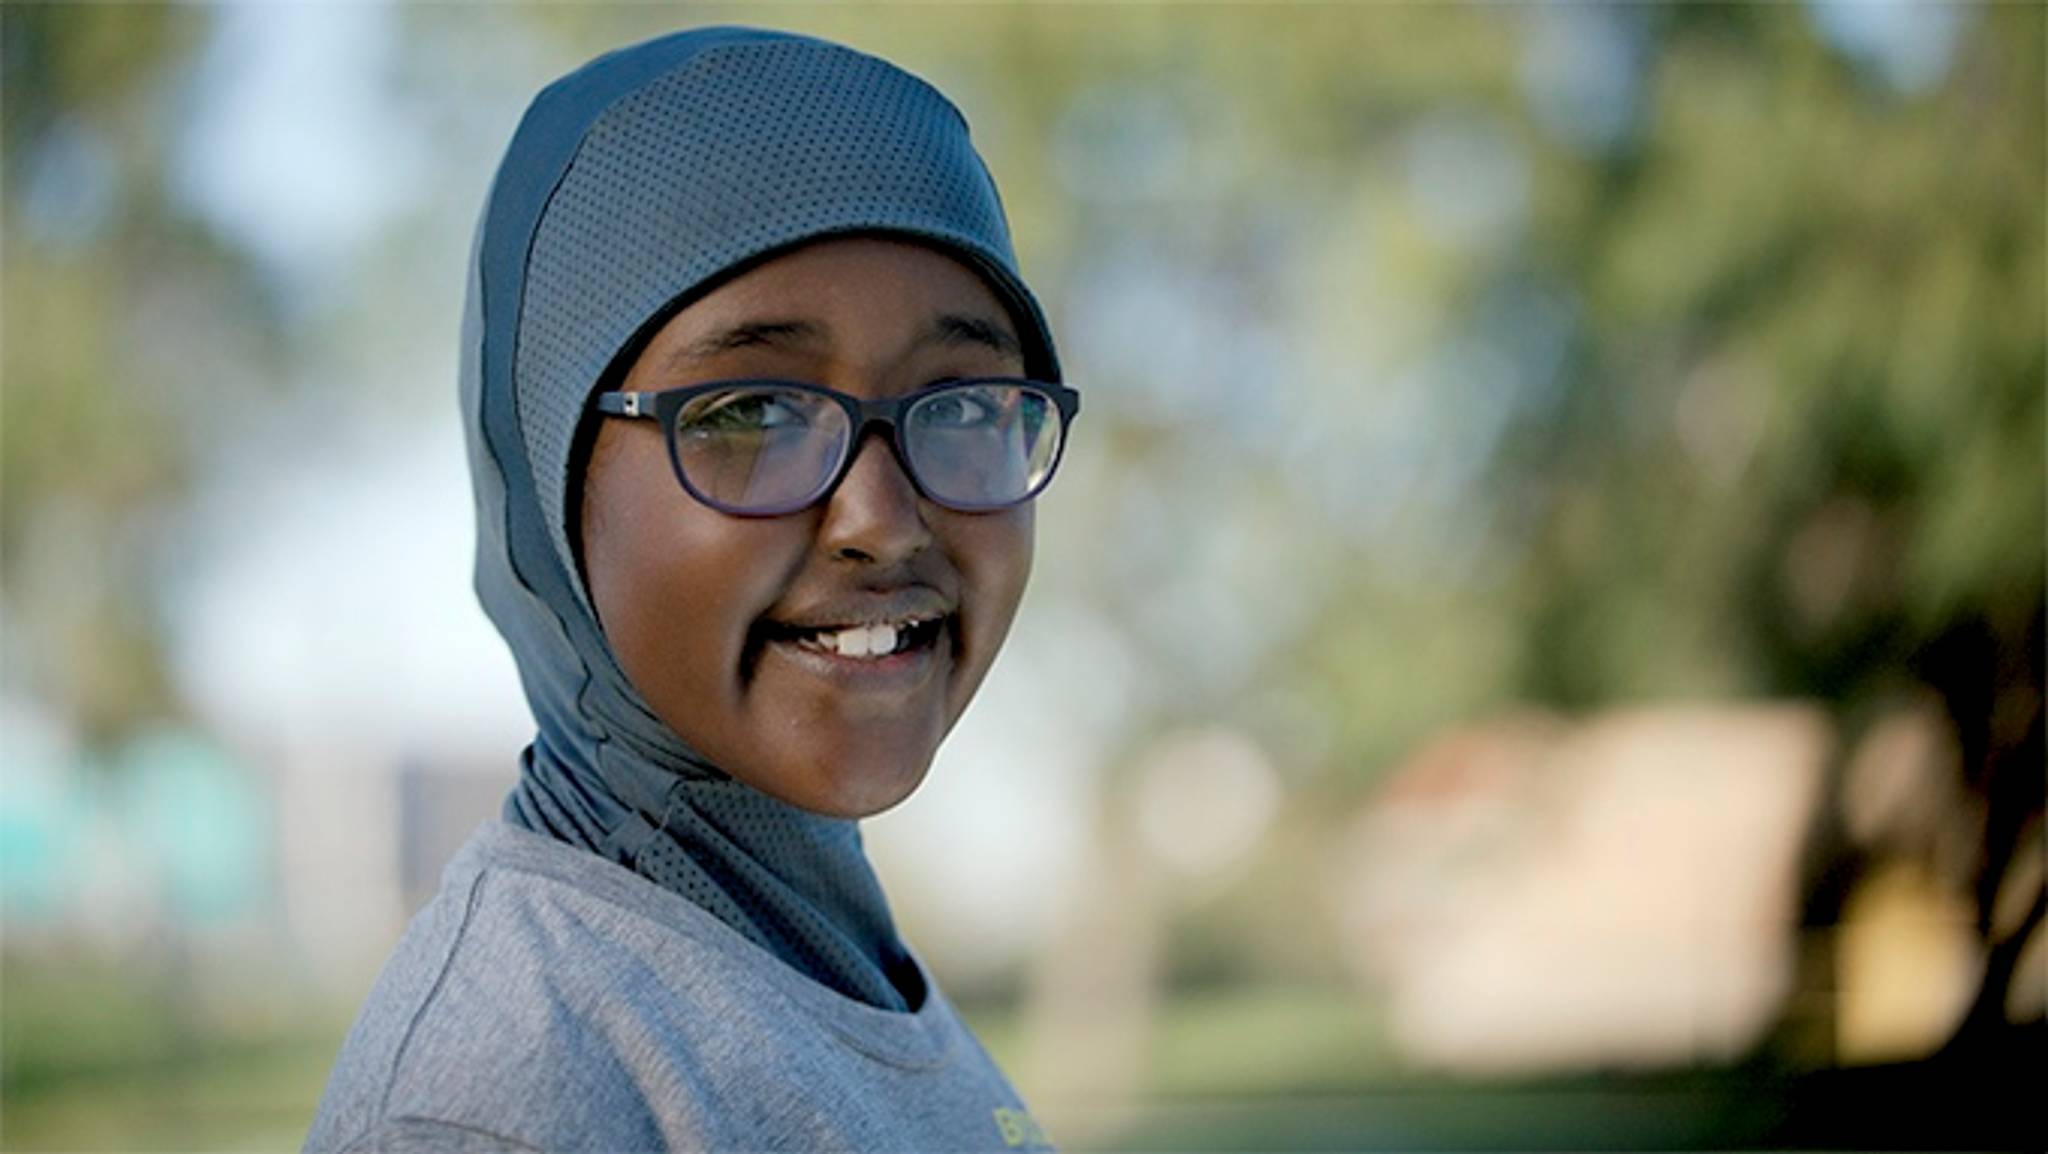 Asiya makes hijabs for athletic Muslim girls